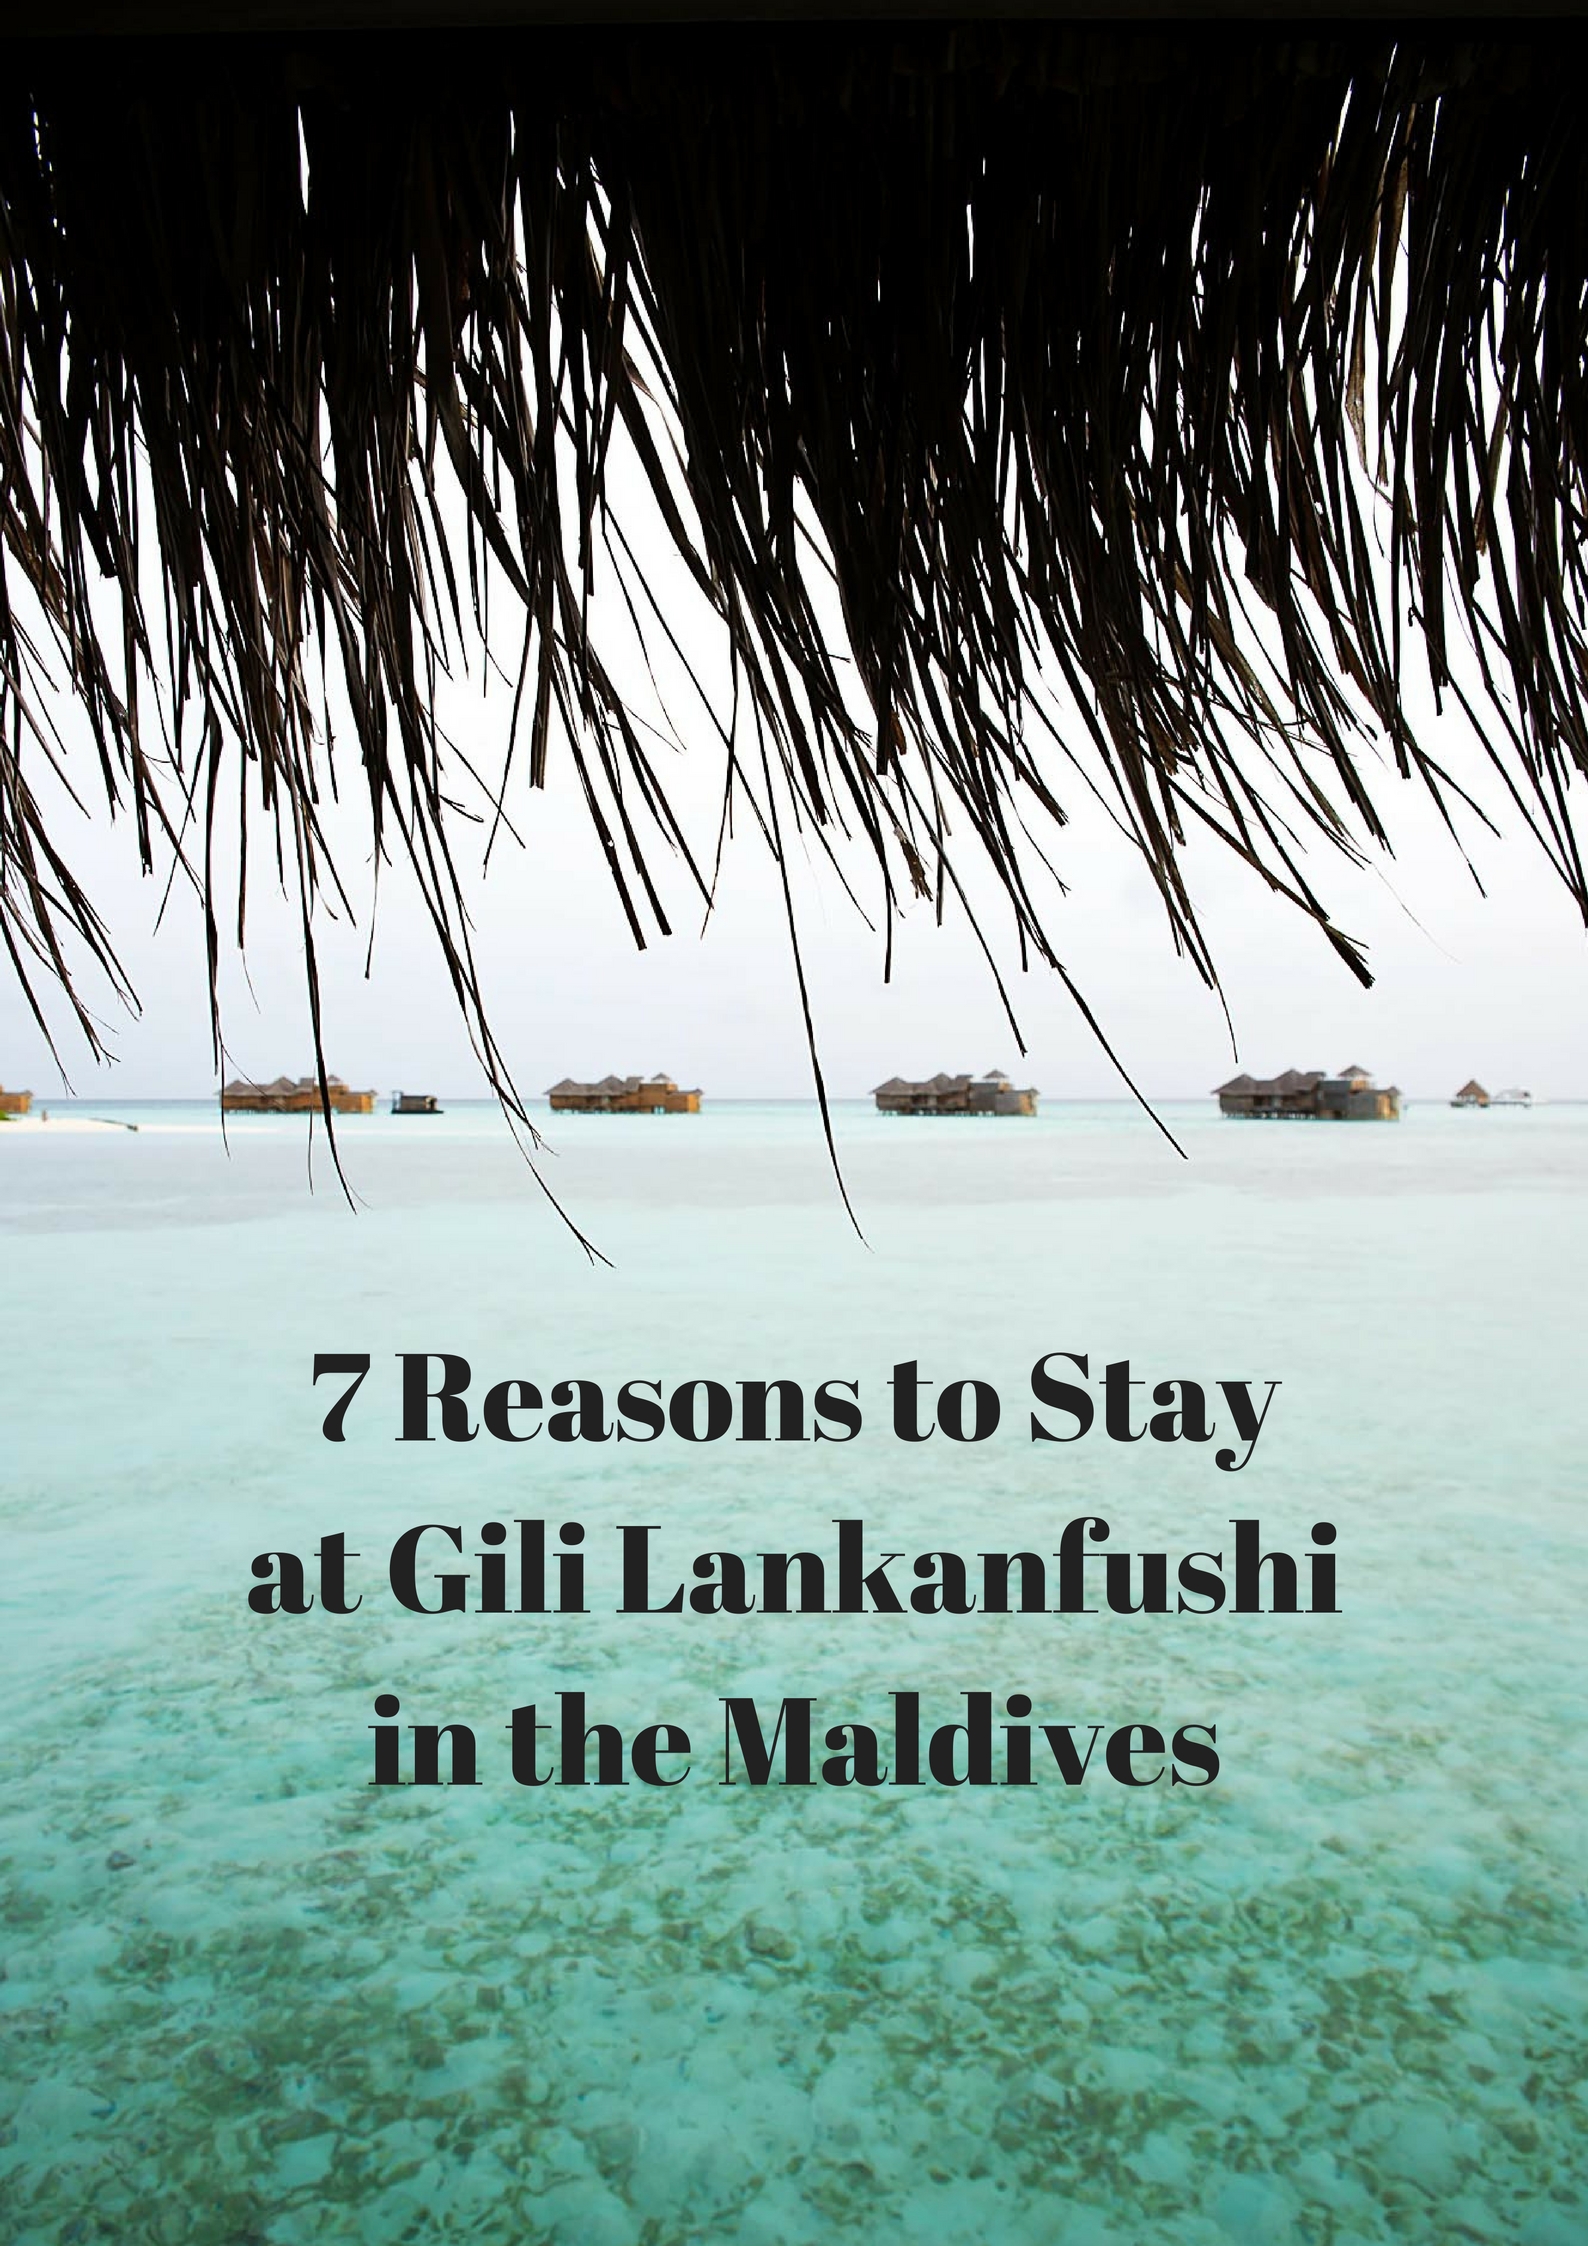 7 Reasons to Stay at Gili Lankanfushi in the Maldives